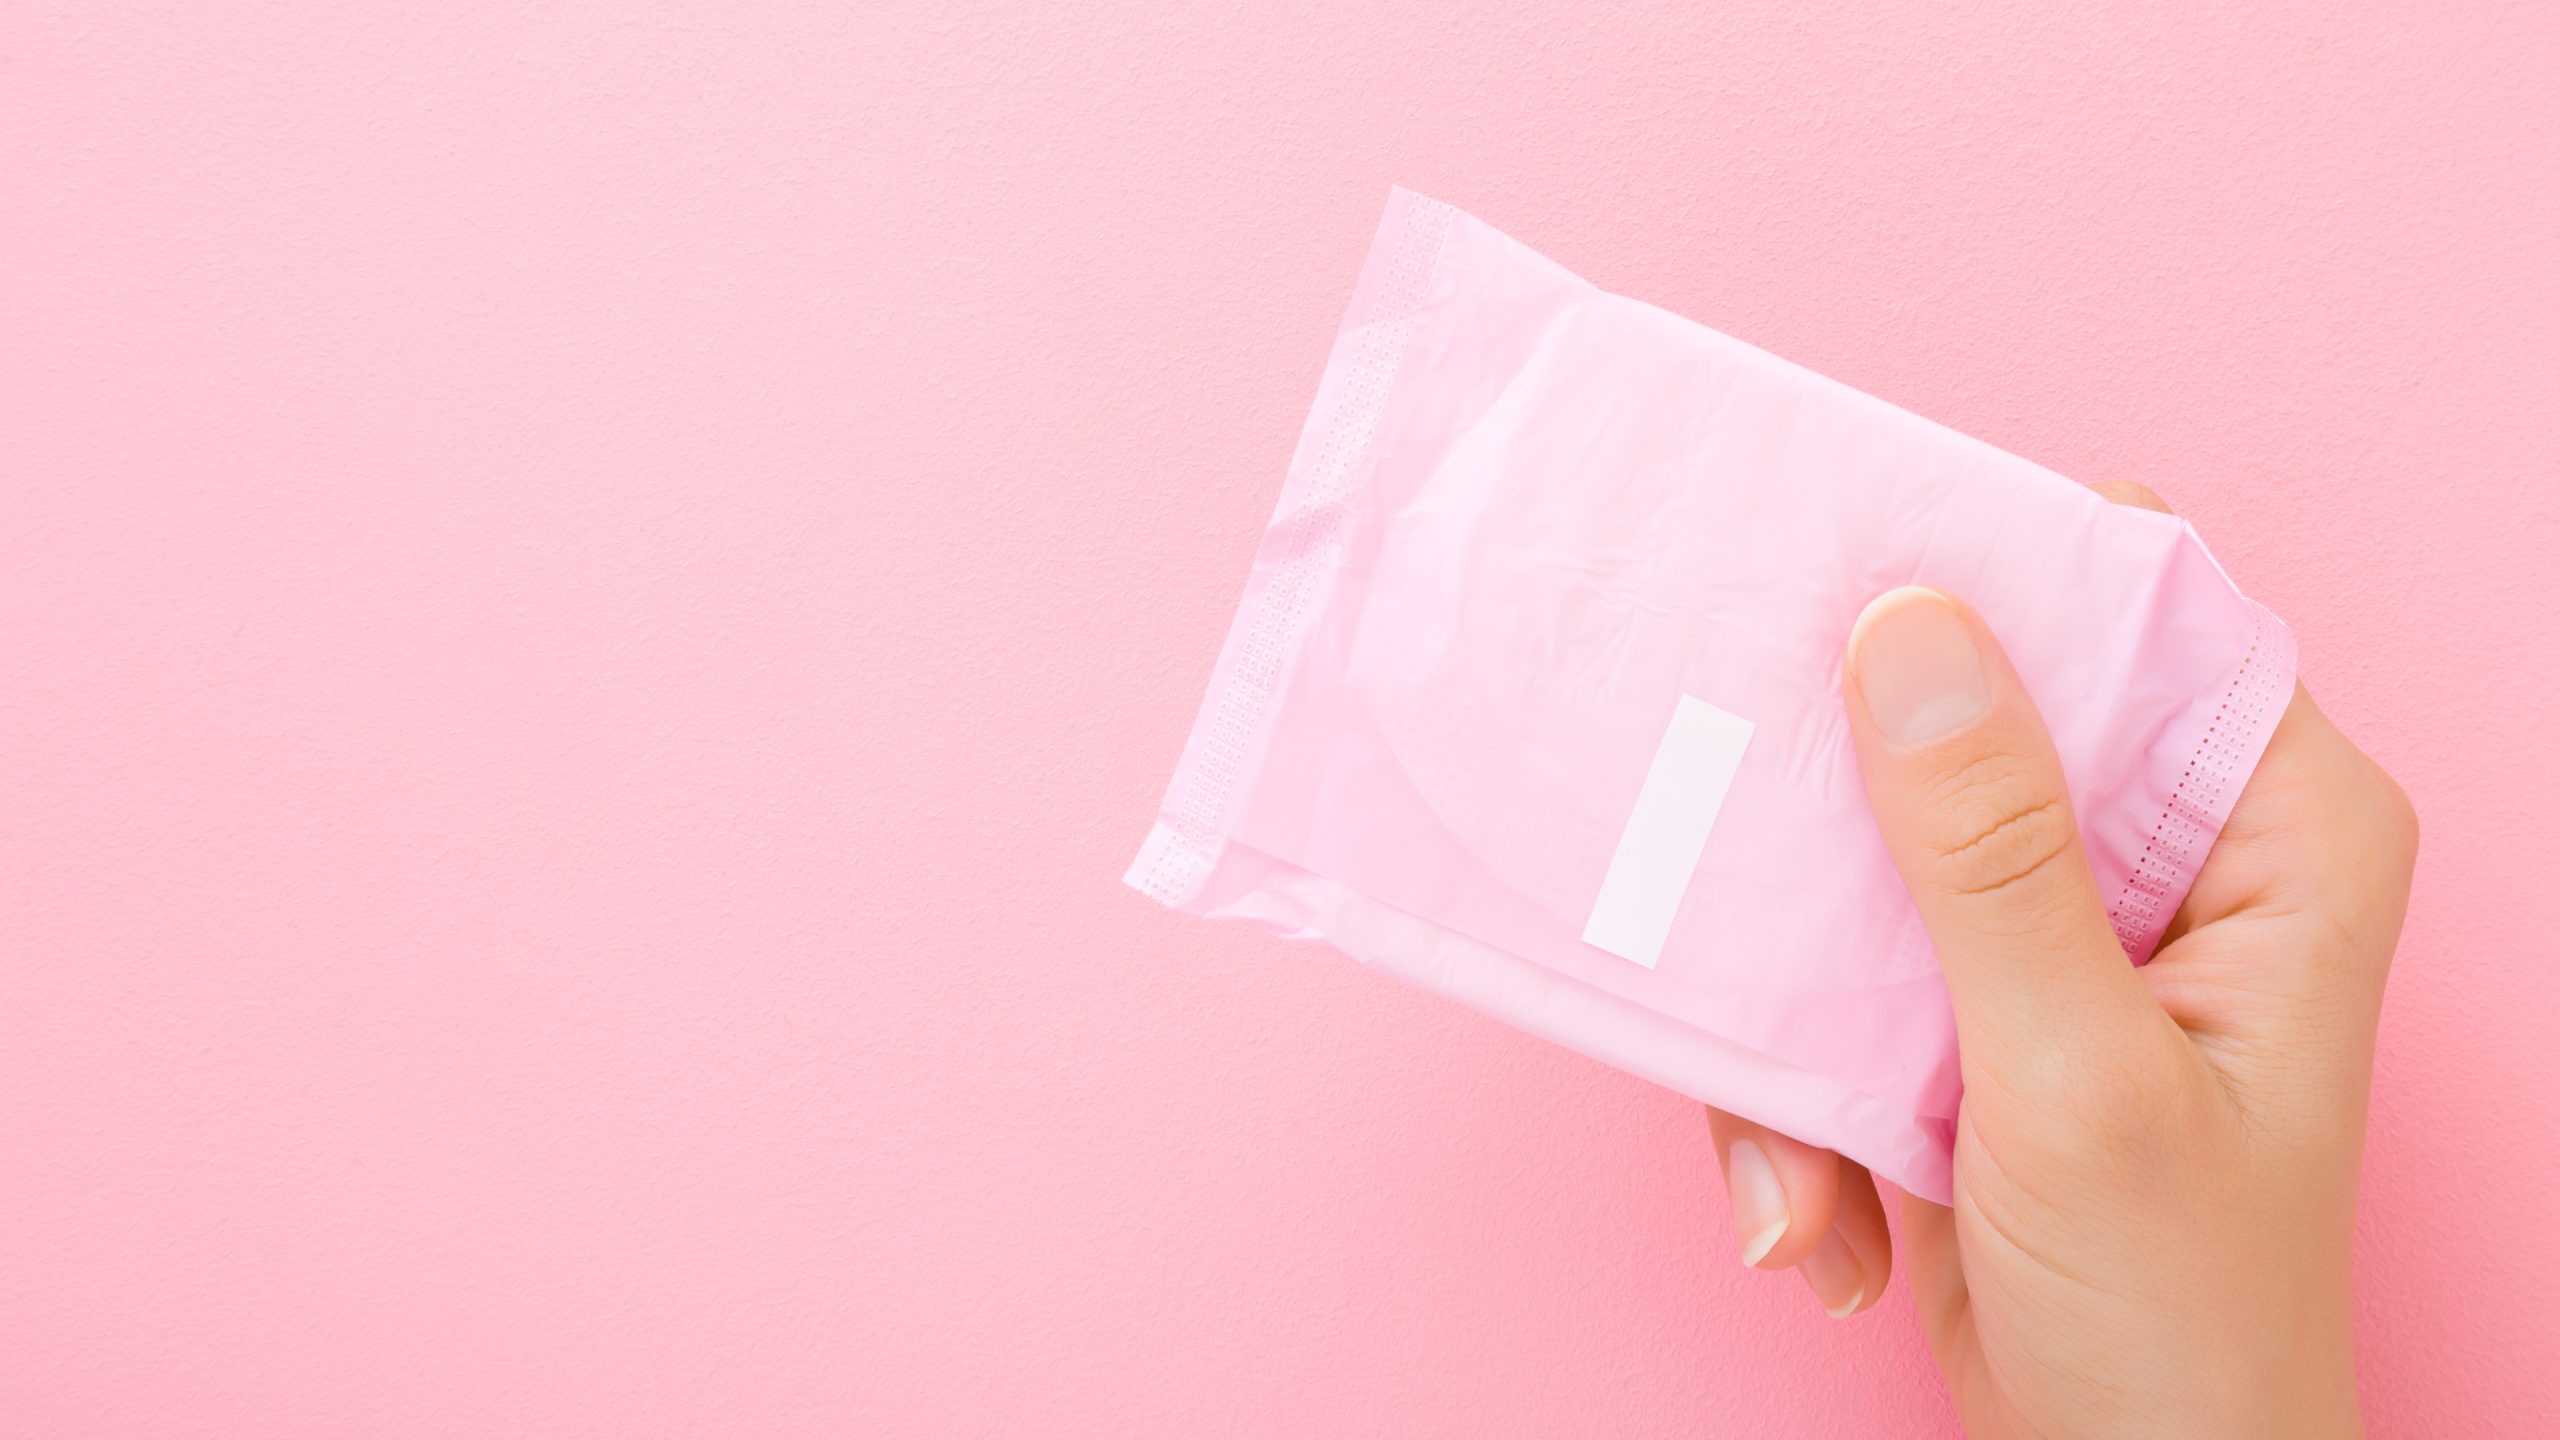 papelmatic-higiene-professional-guia-per-comprar-productes-higiene-menstrual-context